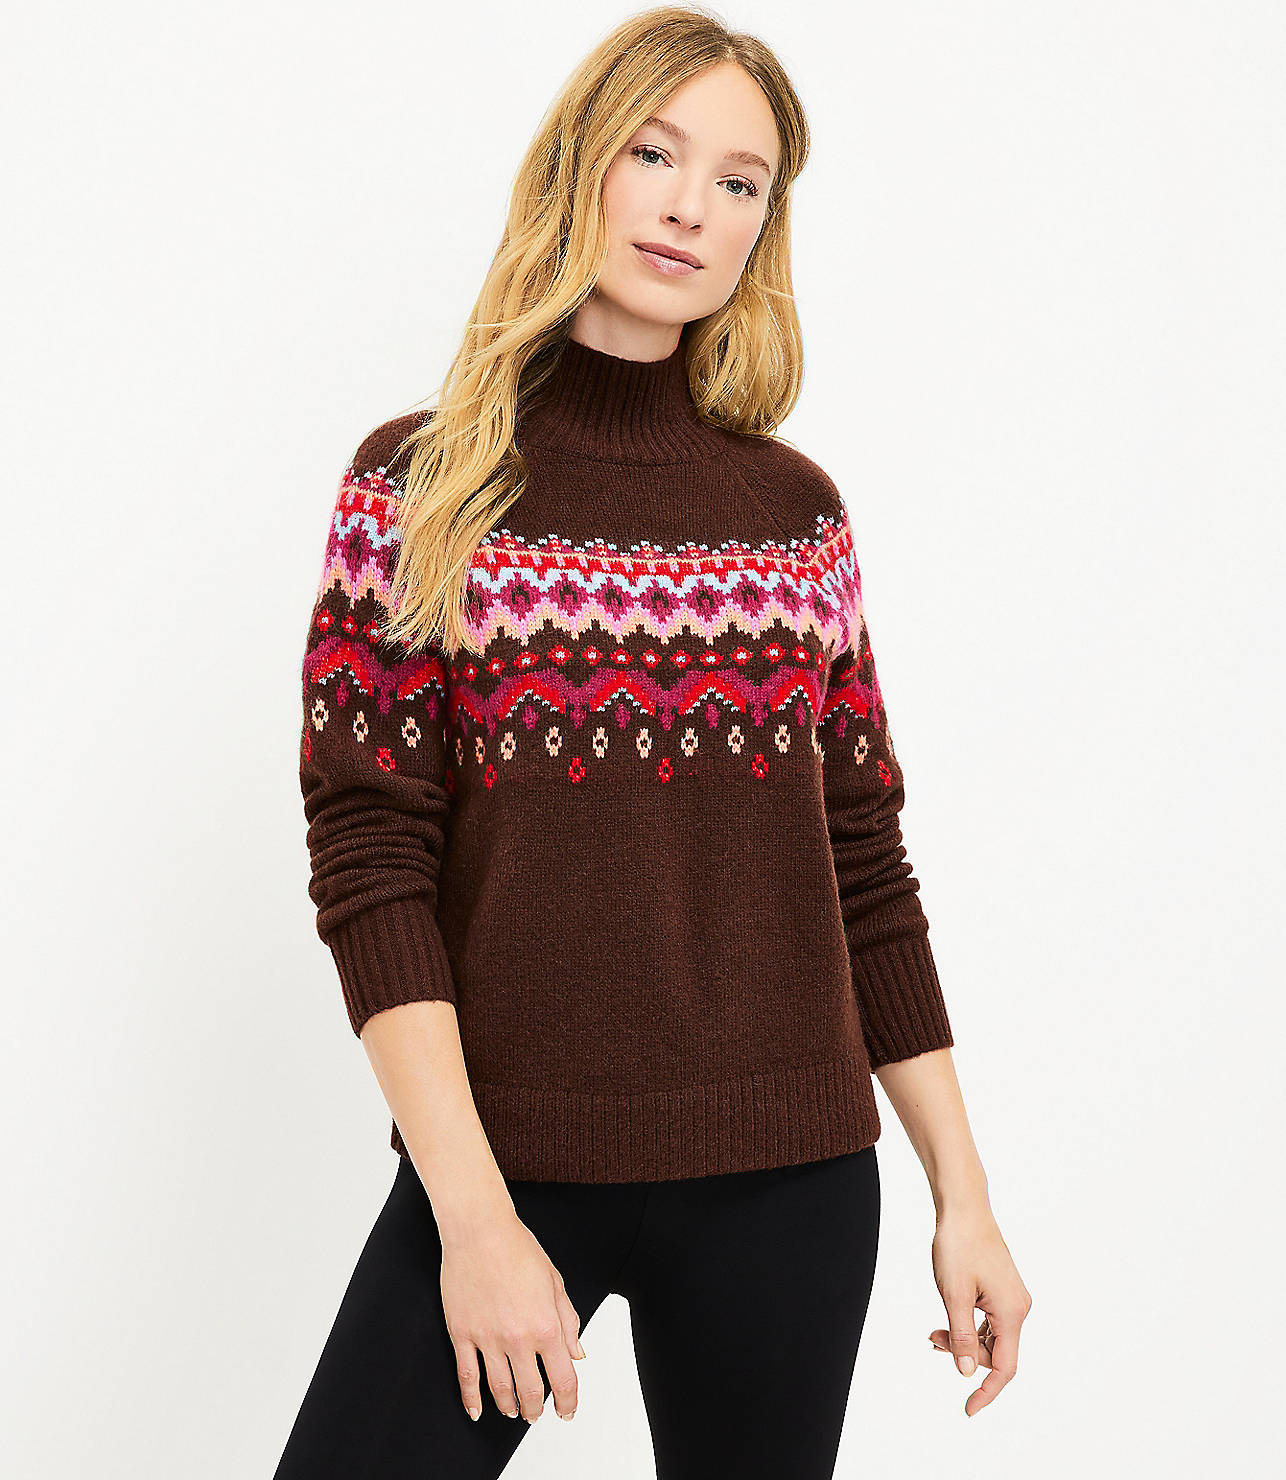 Lou & Grey Fair Isle Sweater